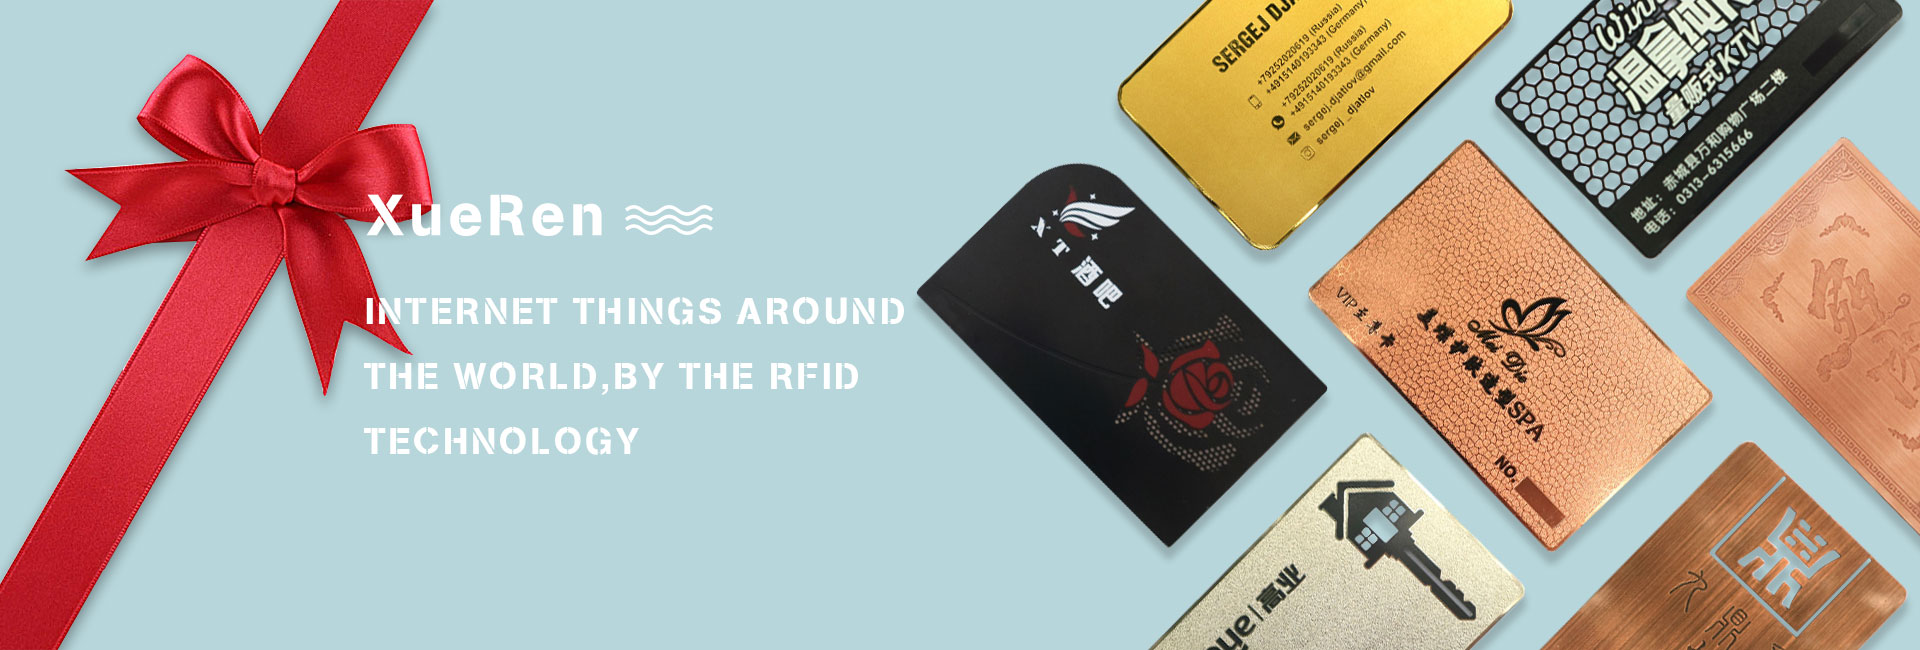 RFID-kortti